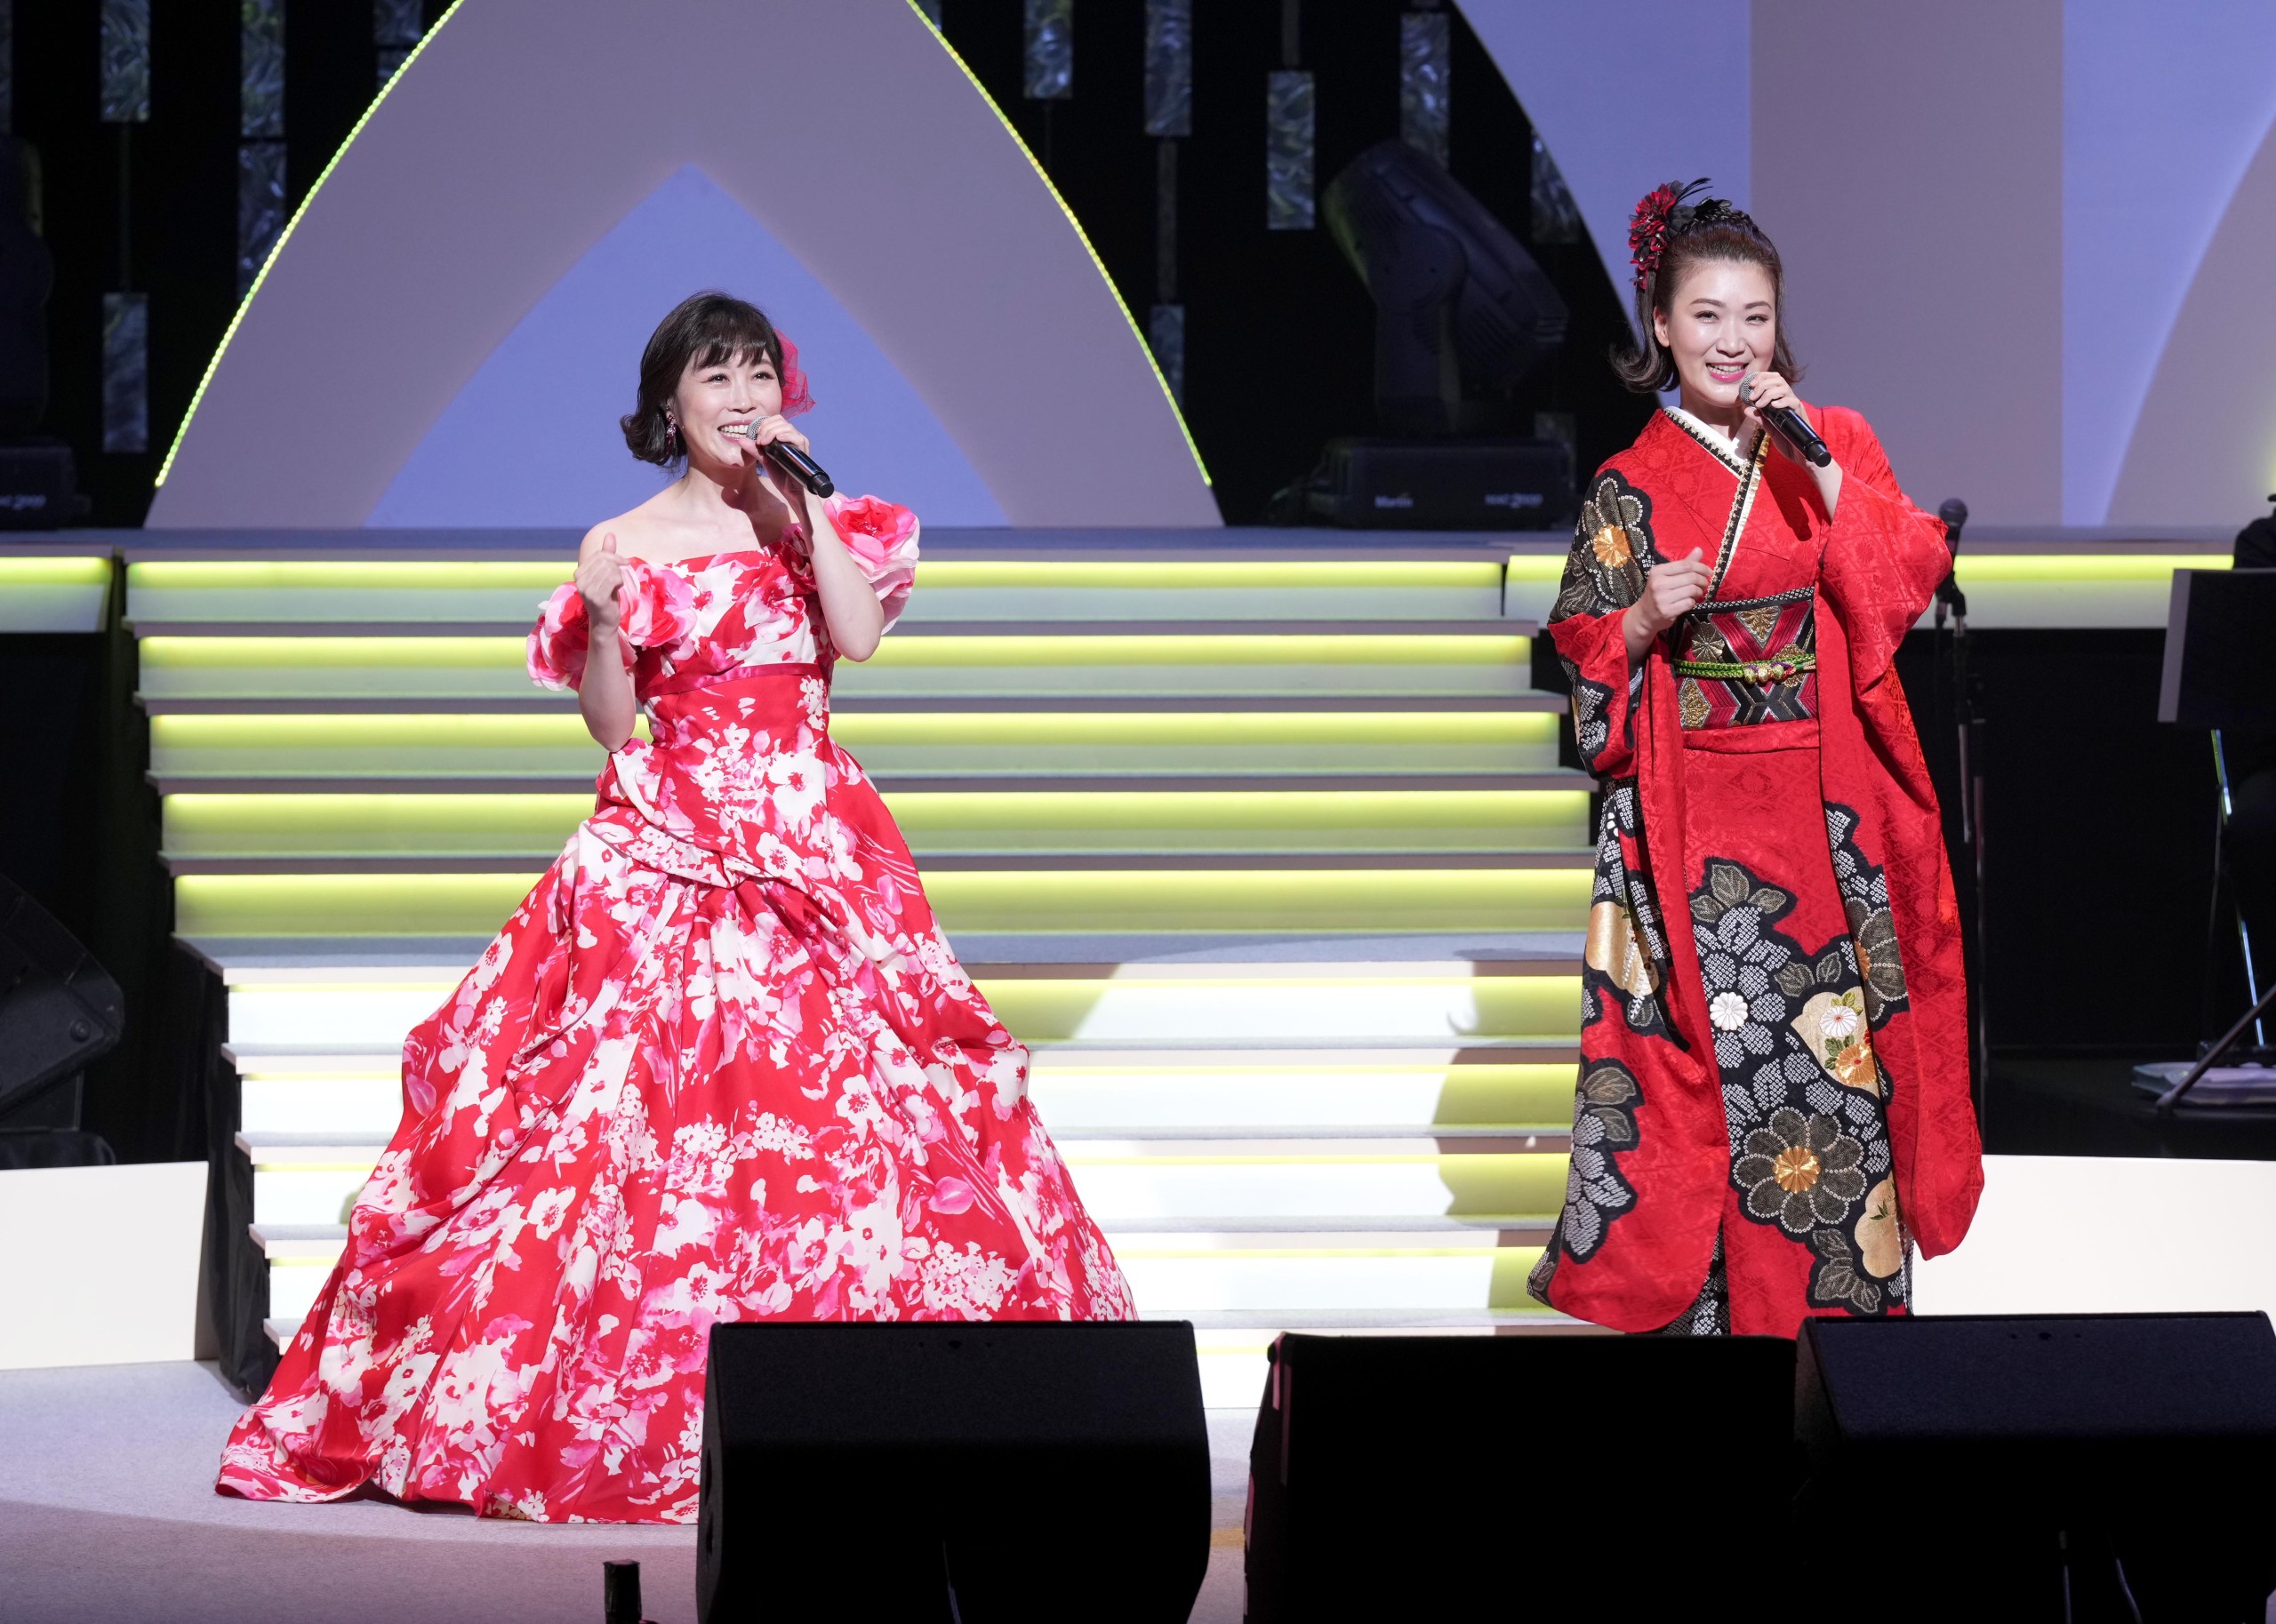 水森かおりと市川由紀乃が初のジョイントコンサートをスタート 京都を皮切りに全国へ 仲良し2人の息もぴったり オトカゼ 音楽の風